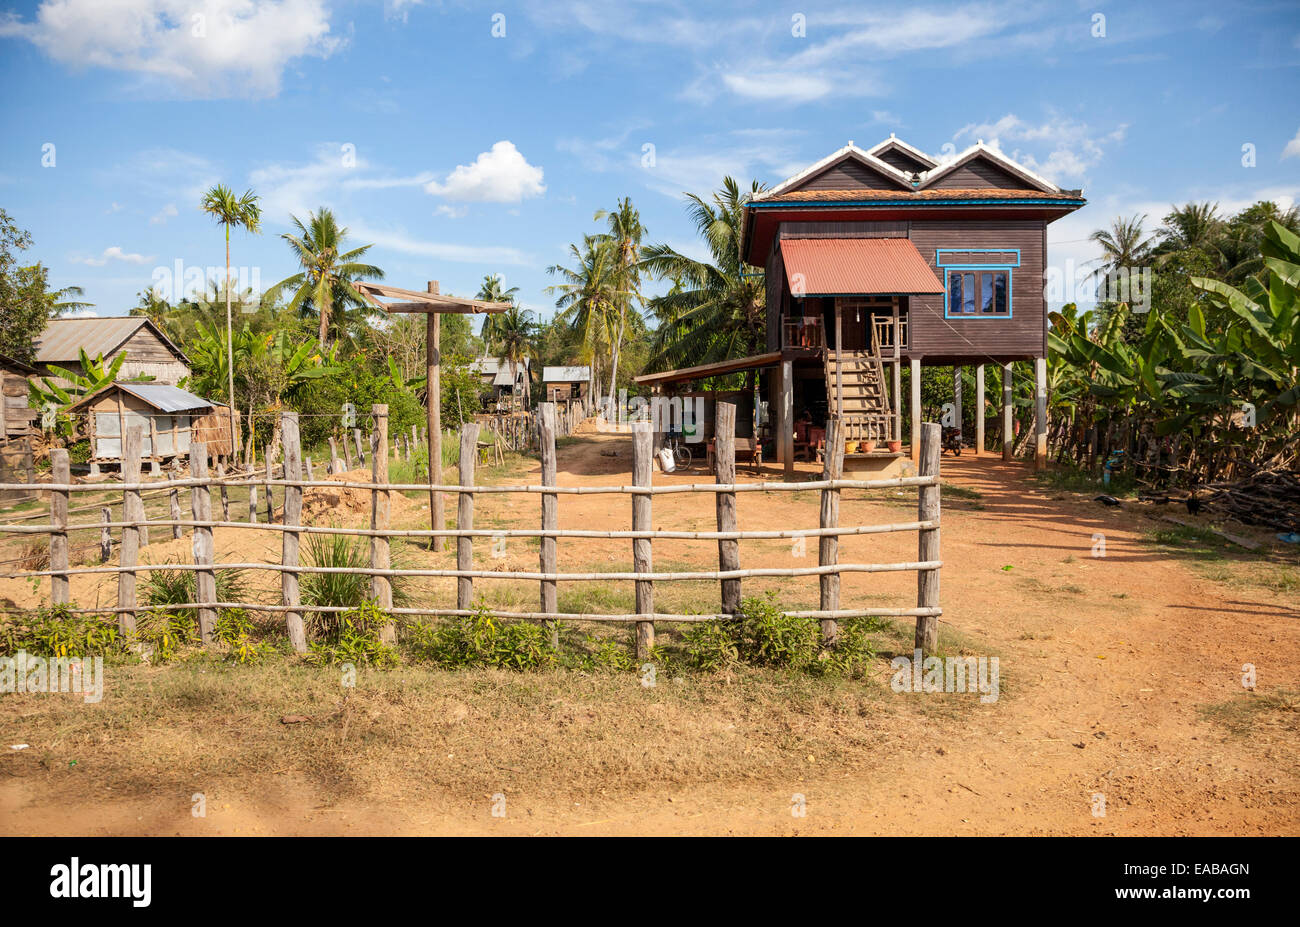 Le Cambodge. Maison rurale typique, avec un logement au-dessus de la zone de stockage au niveau du sol. Banque D'Images